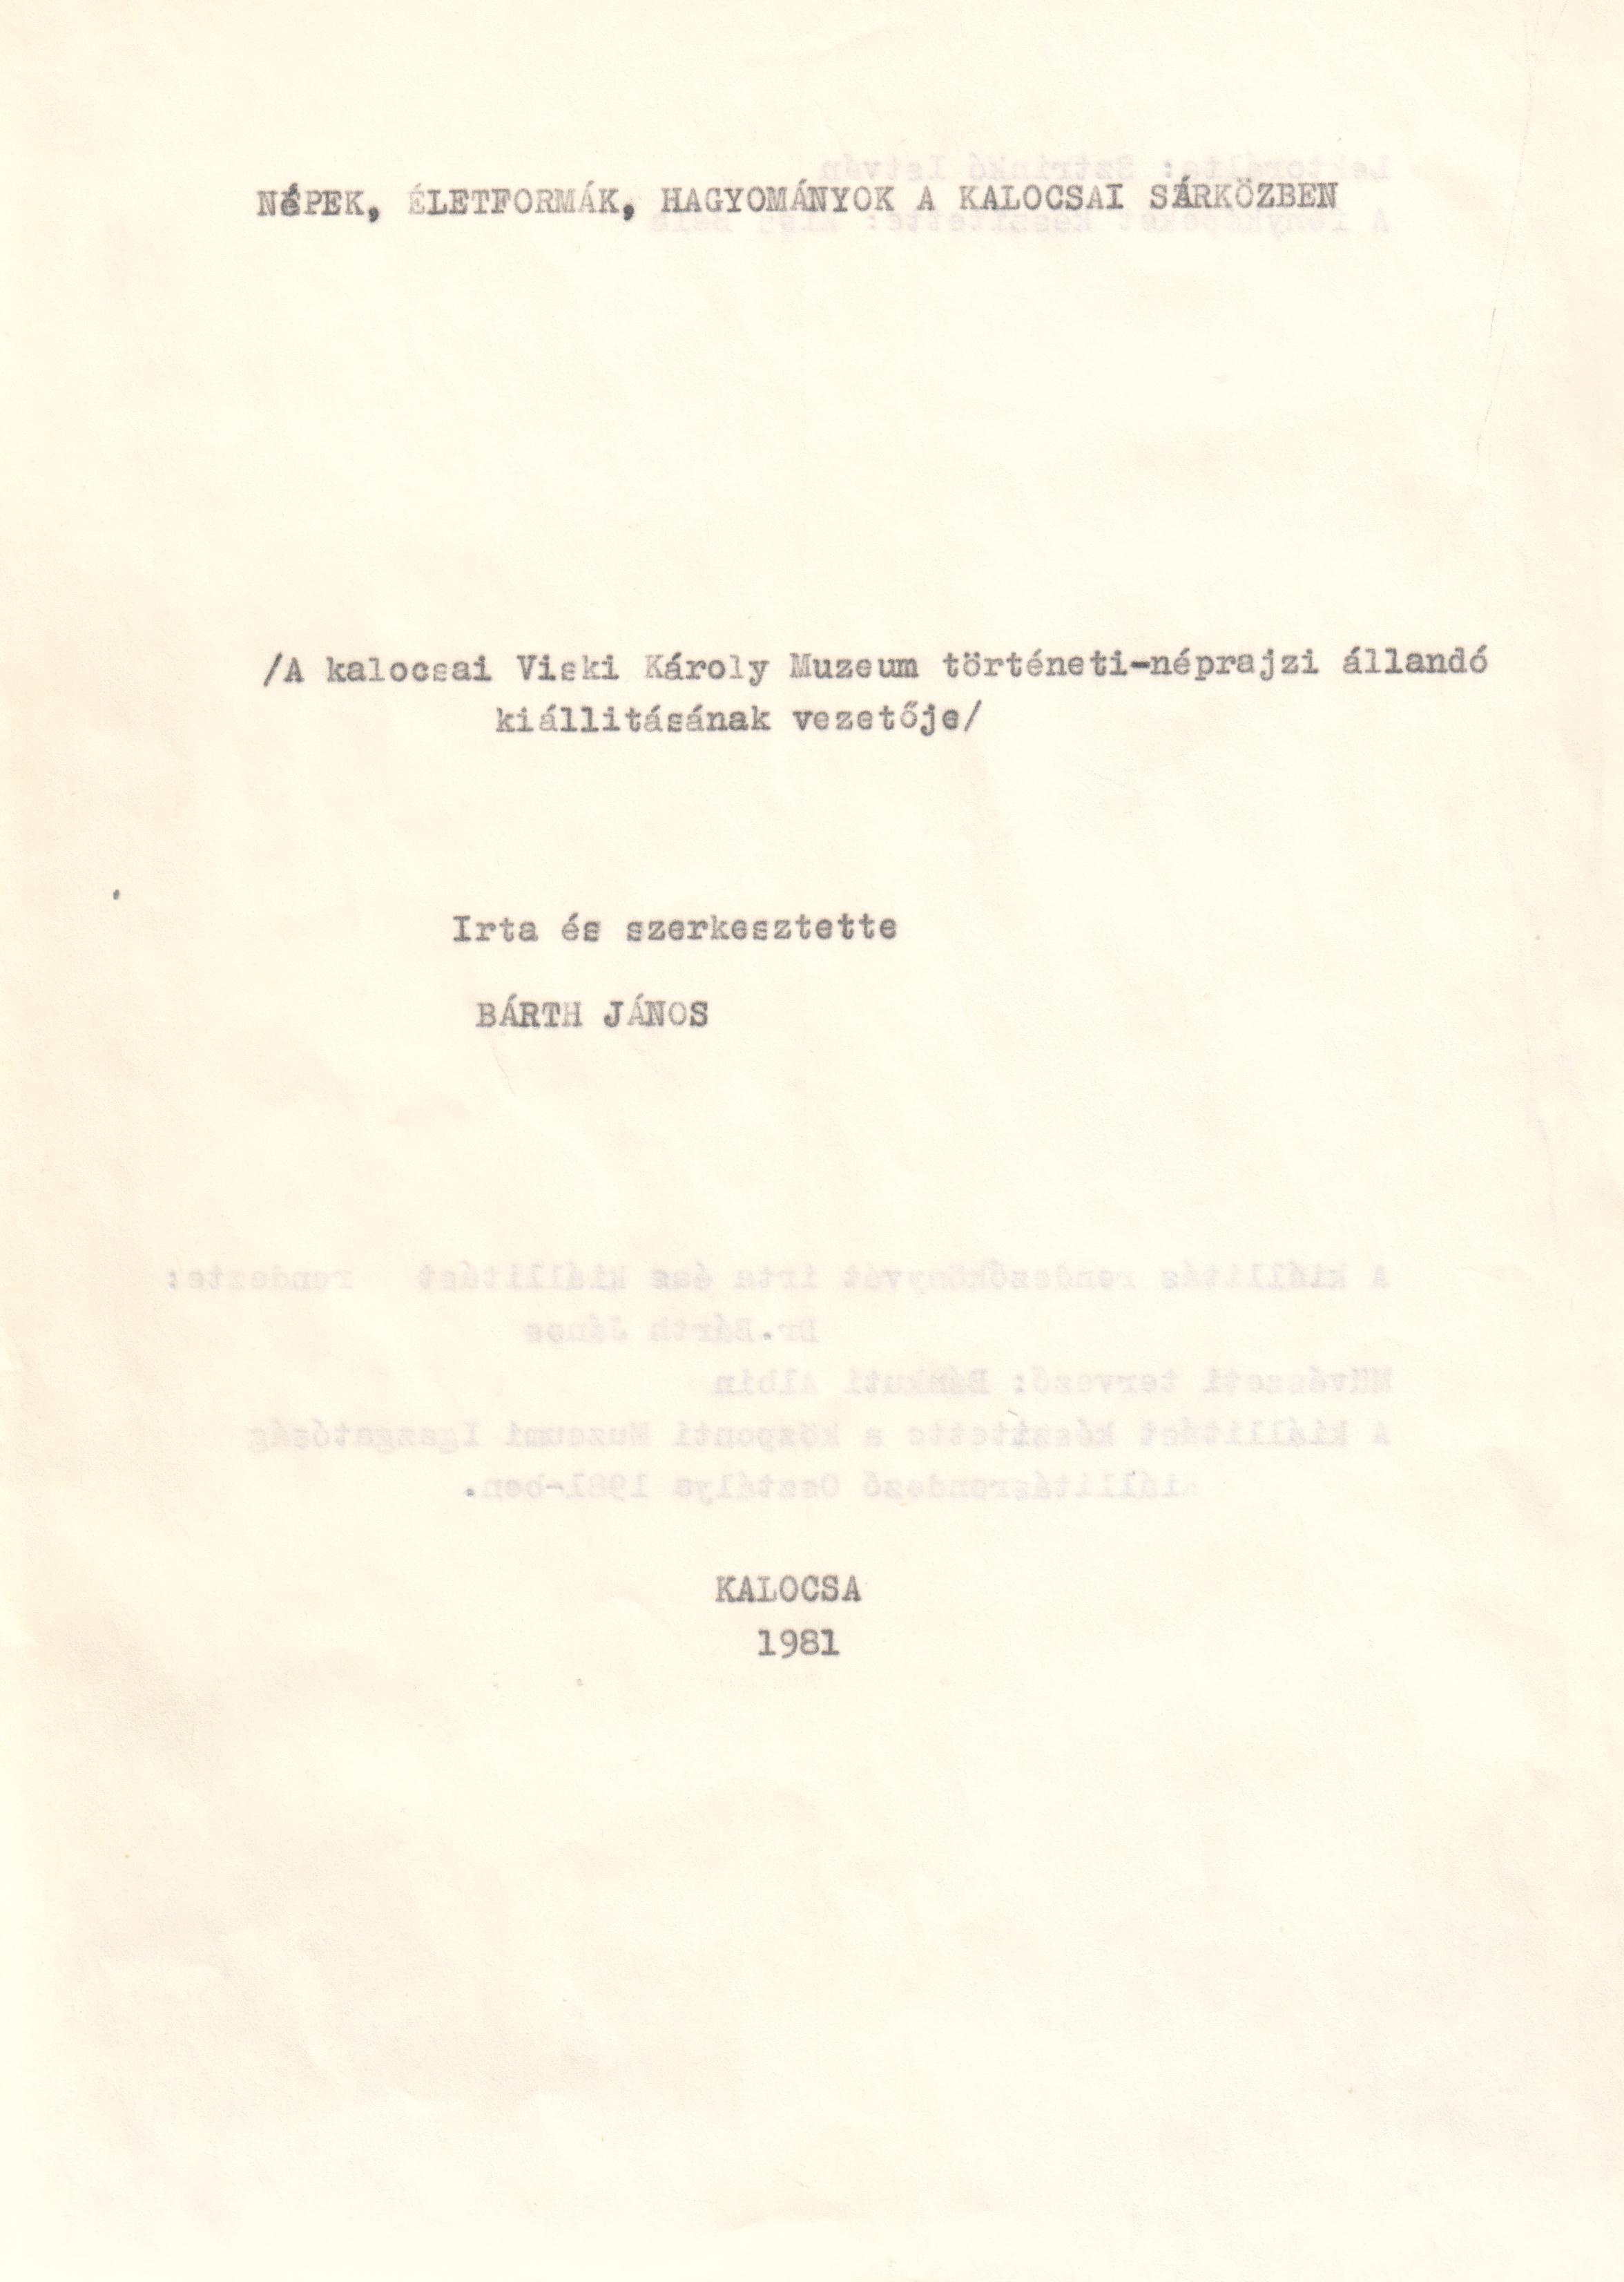 A kalocsai Viski Károly Múzeum történeti-néprajzi állandó kiállításának vezetője c. könyv gépirata. (Viski Károly Múzeum Kalocsa RR-F)